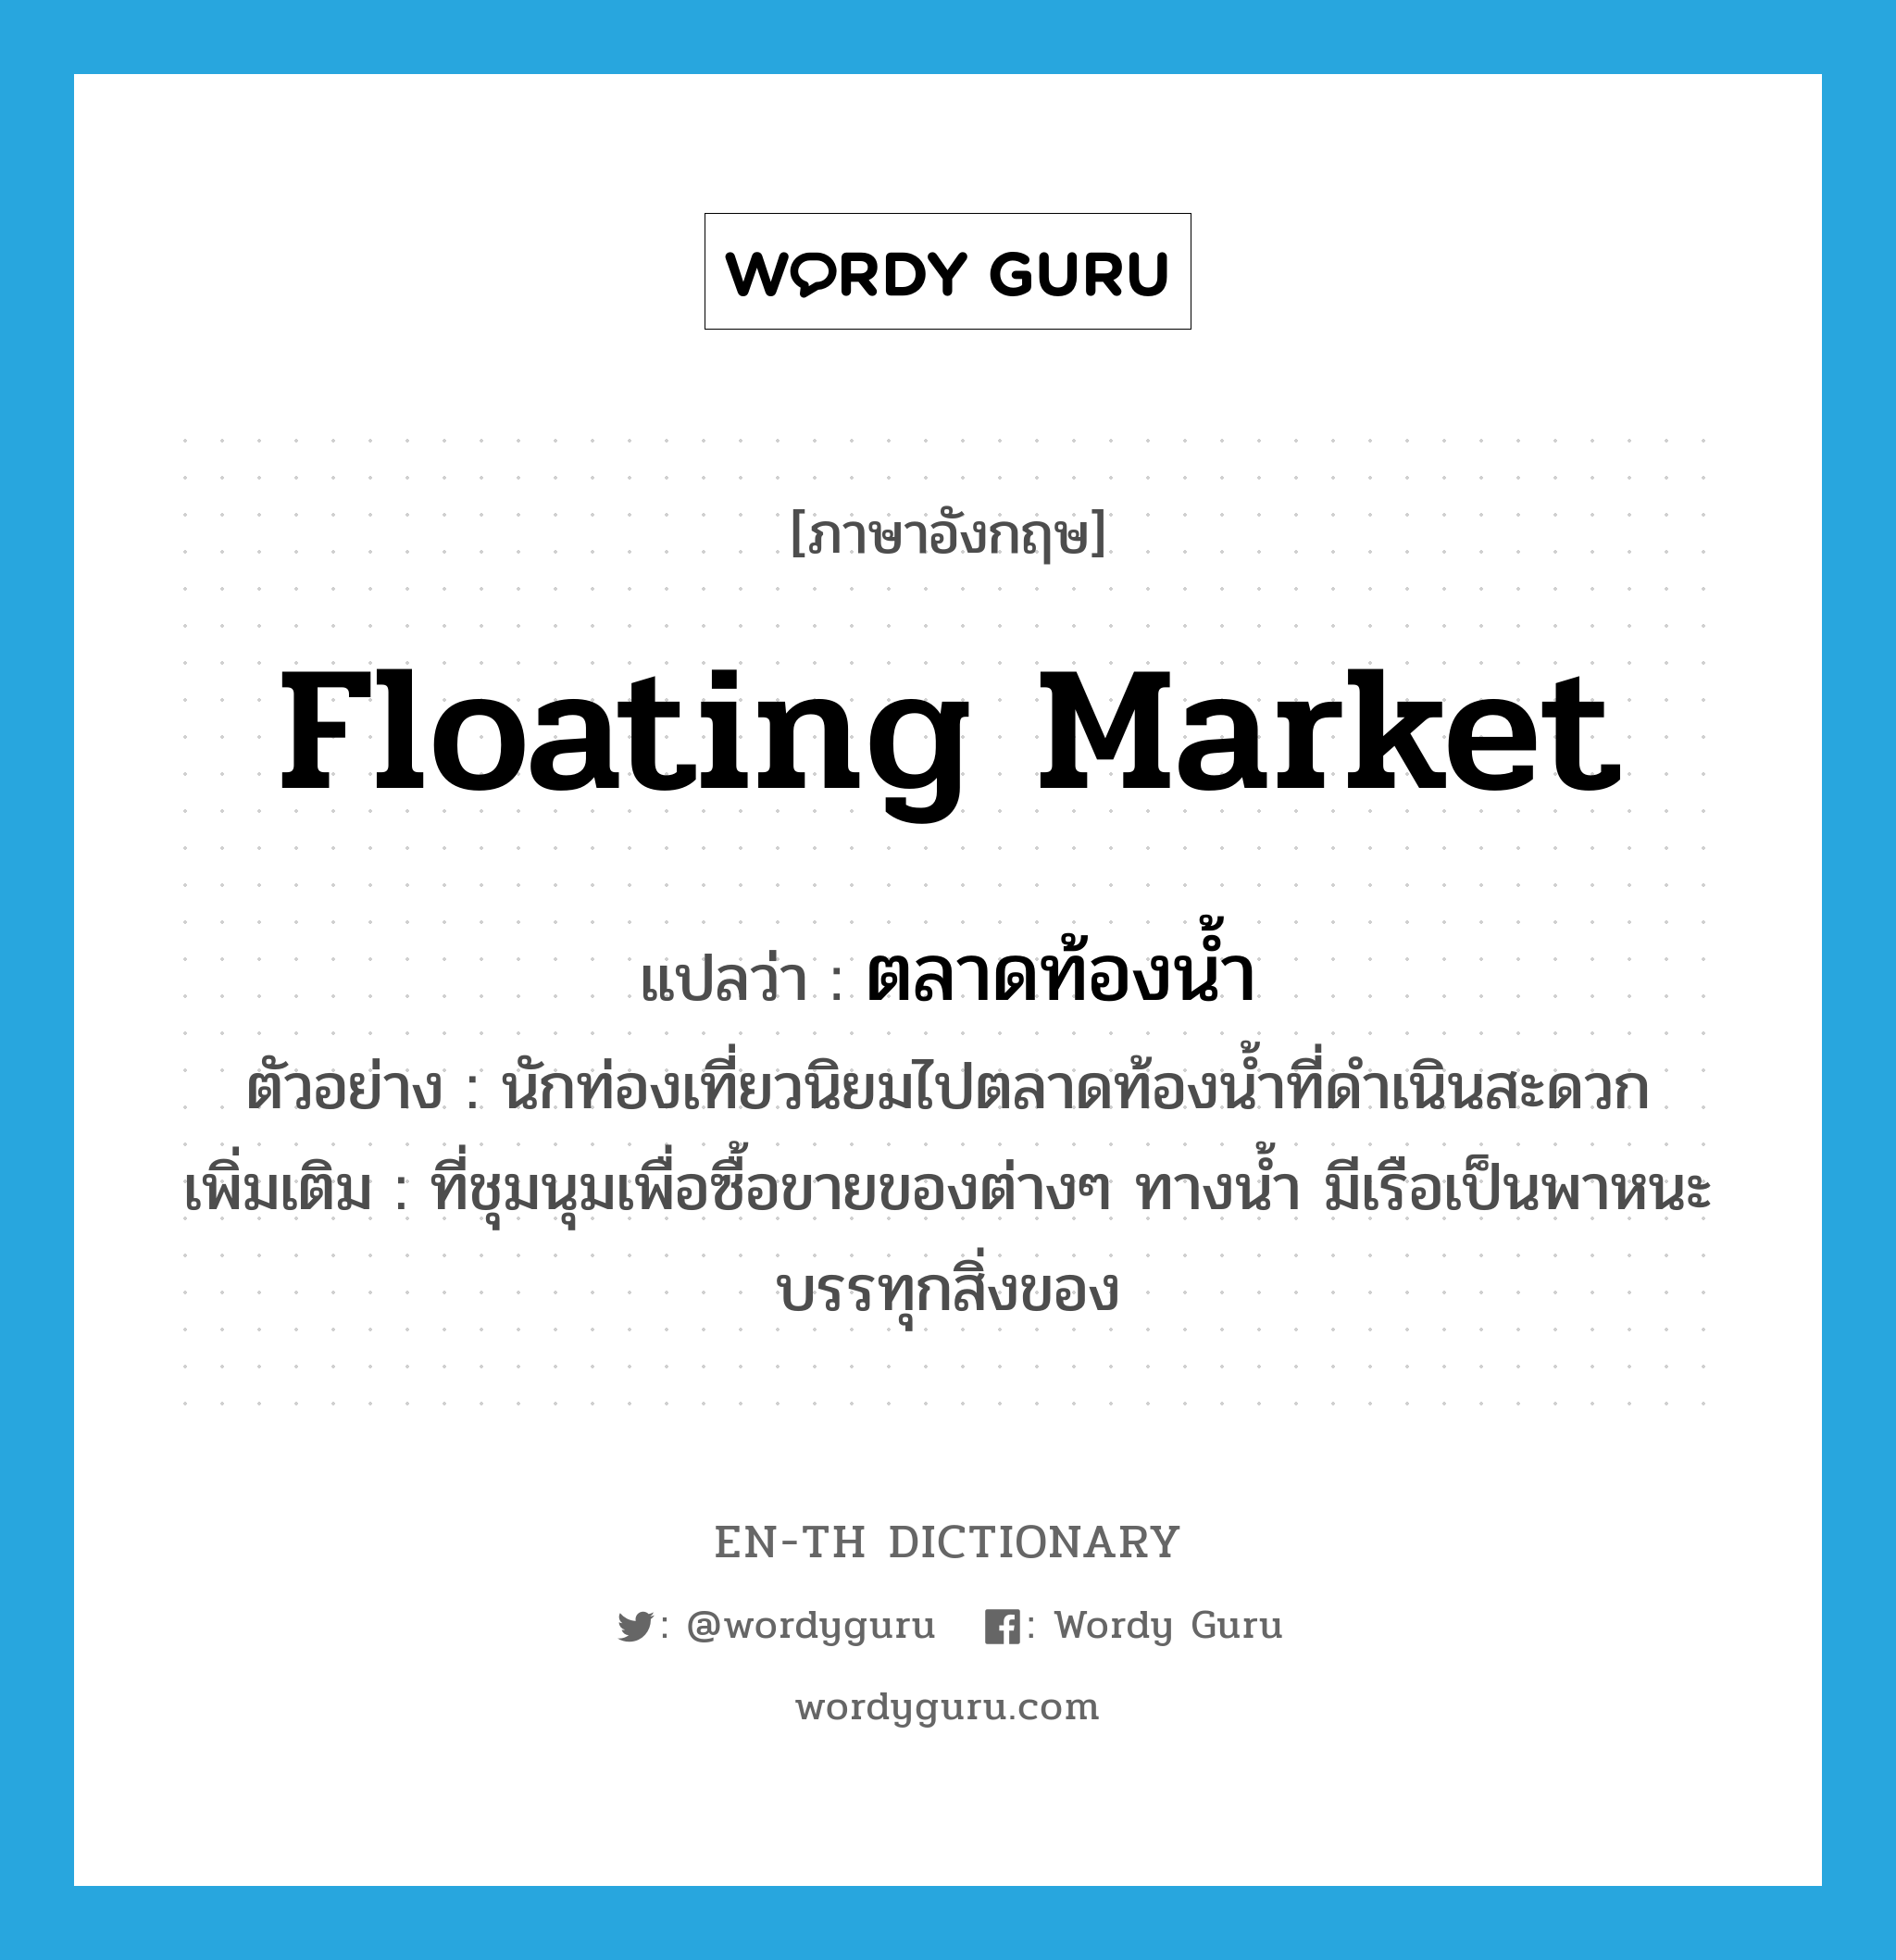 floating market แปลว่า?, คำศัพท์ภาษาอังกฤษ floating market แปลว่า ตลาดท้องน้ำ ประเภท N ตัวอย่าง นักท่องเที่ยวนิยมไปตลาดท้องน้ำที่ดำเนินสะดวก เพิ่มเติม ที่ชุมนุมเพื่อซื้อขายของต่างๆ ทางน้ำ มีเรือเป็นพาหนะบรรทุกสิ่งของ หมวด N